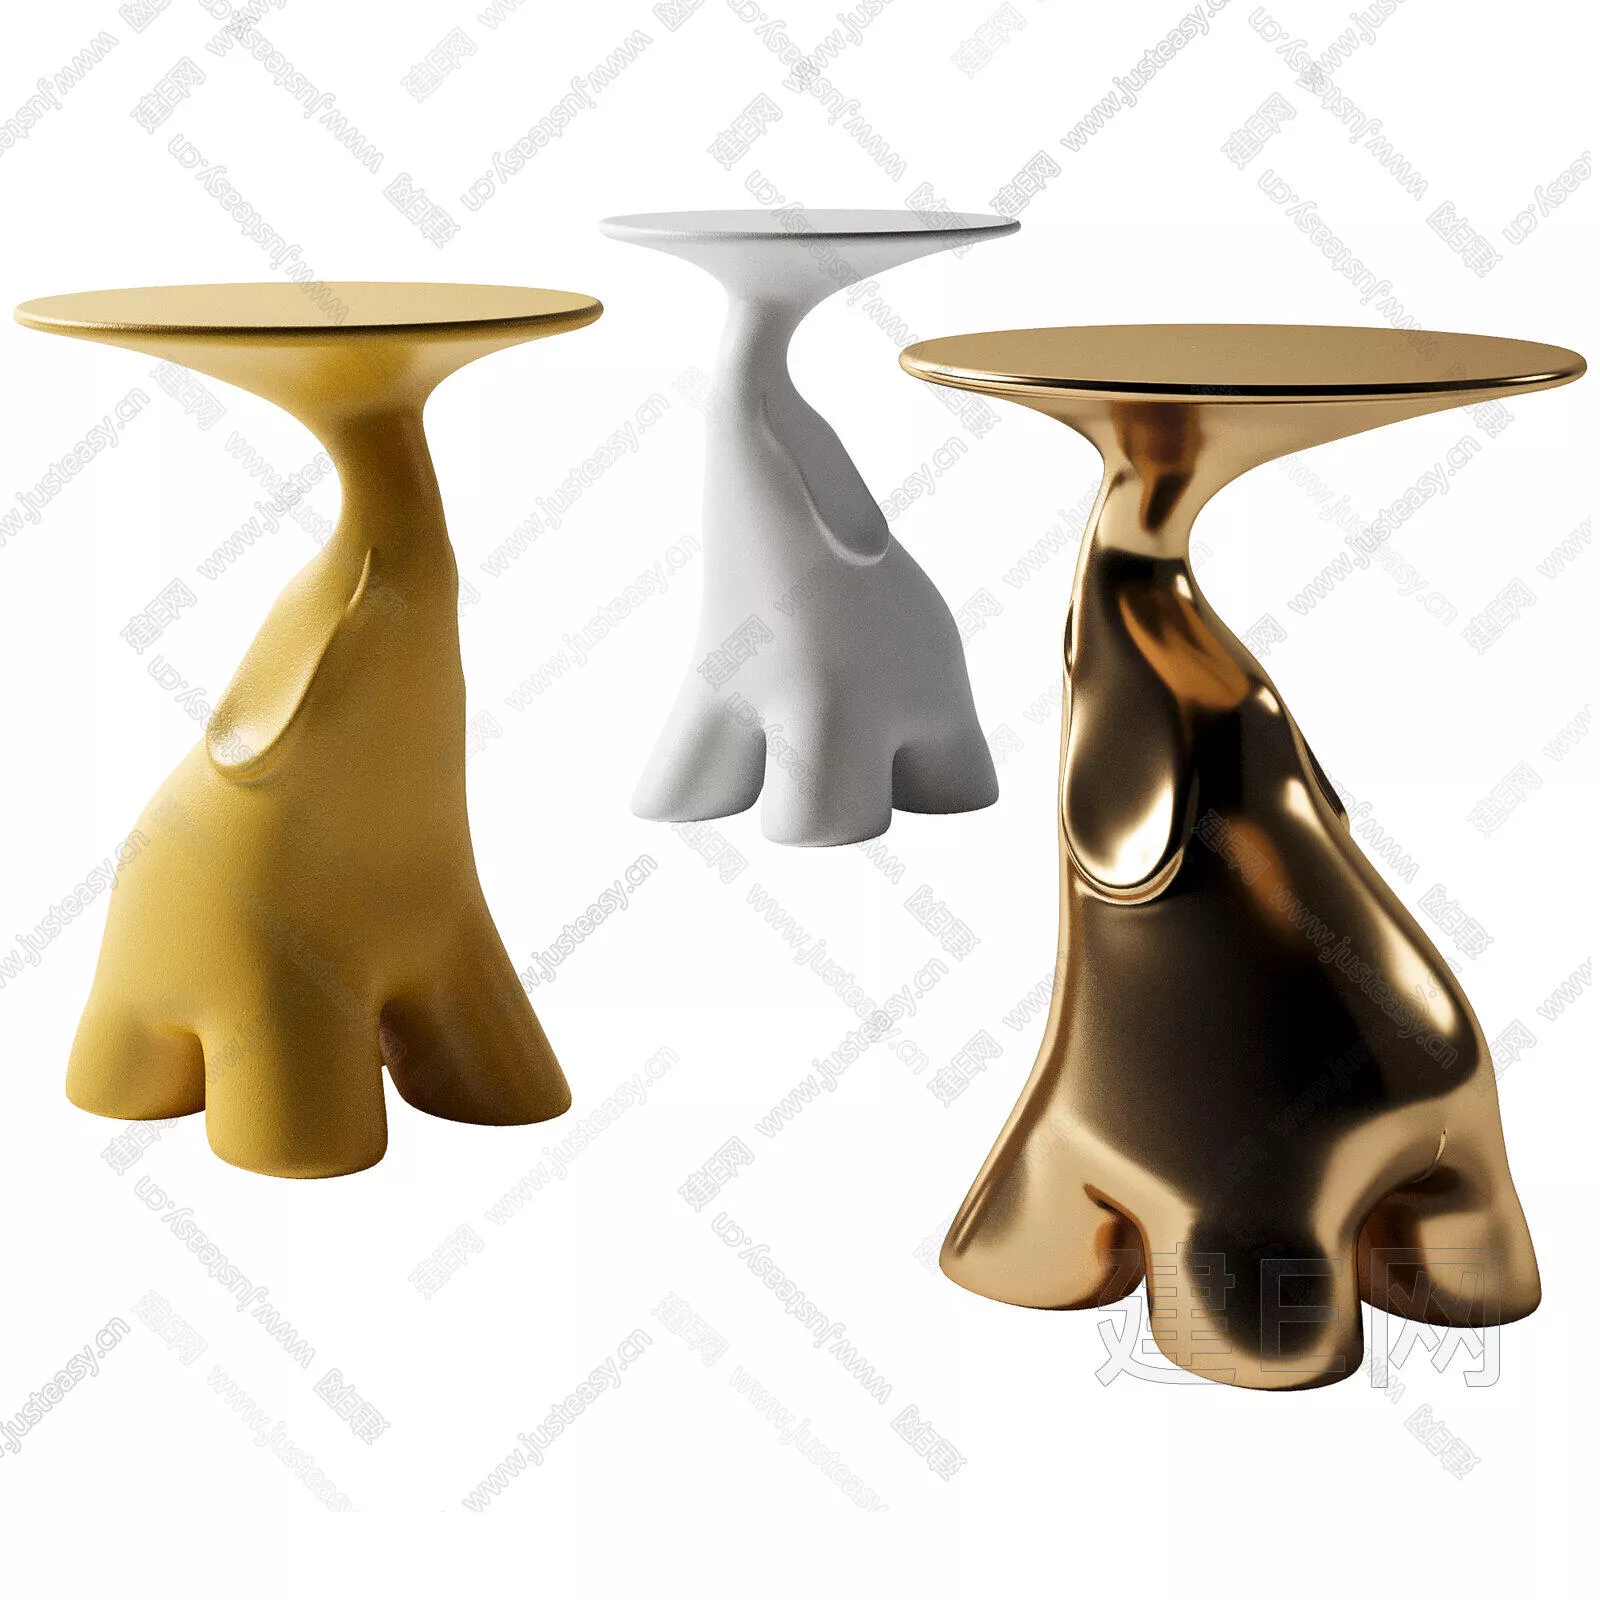 MODERN SIDE TABLE - SKETCHUP 3D MODEL - ENSCAPE - 103893027